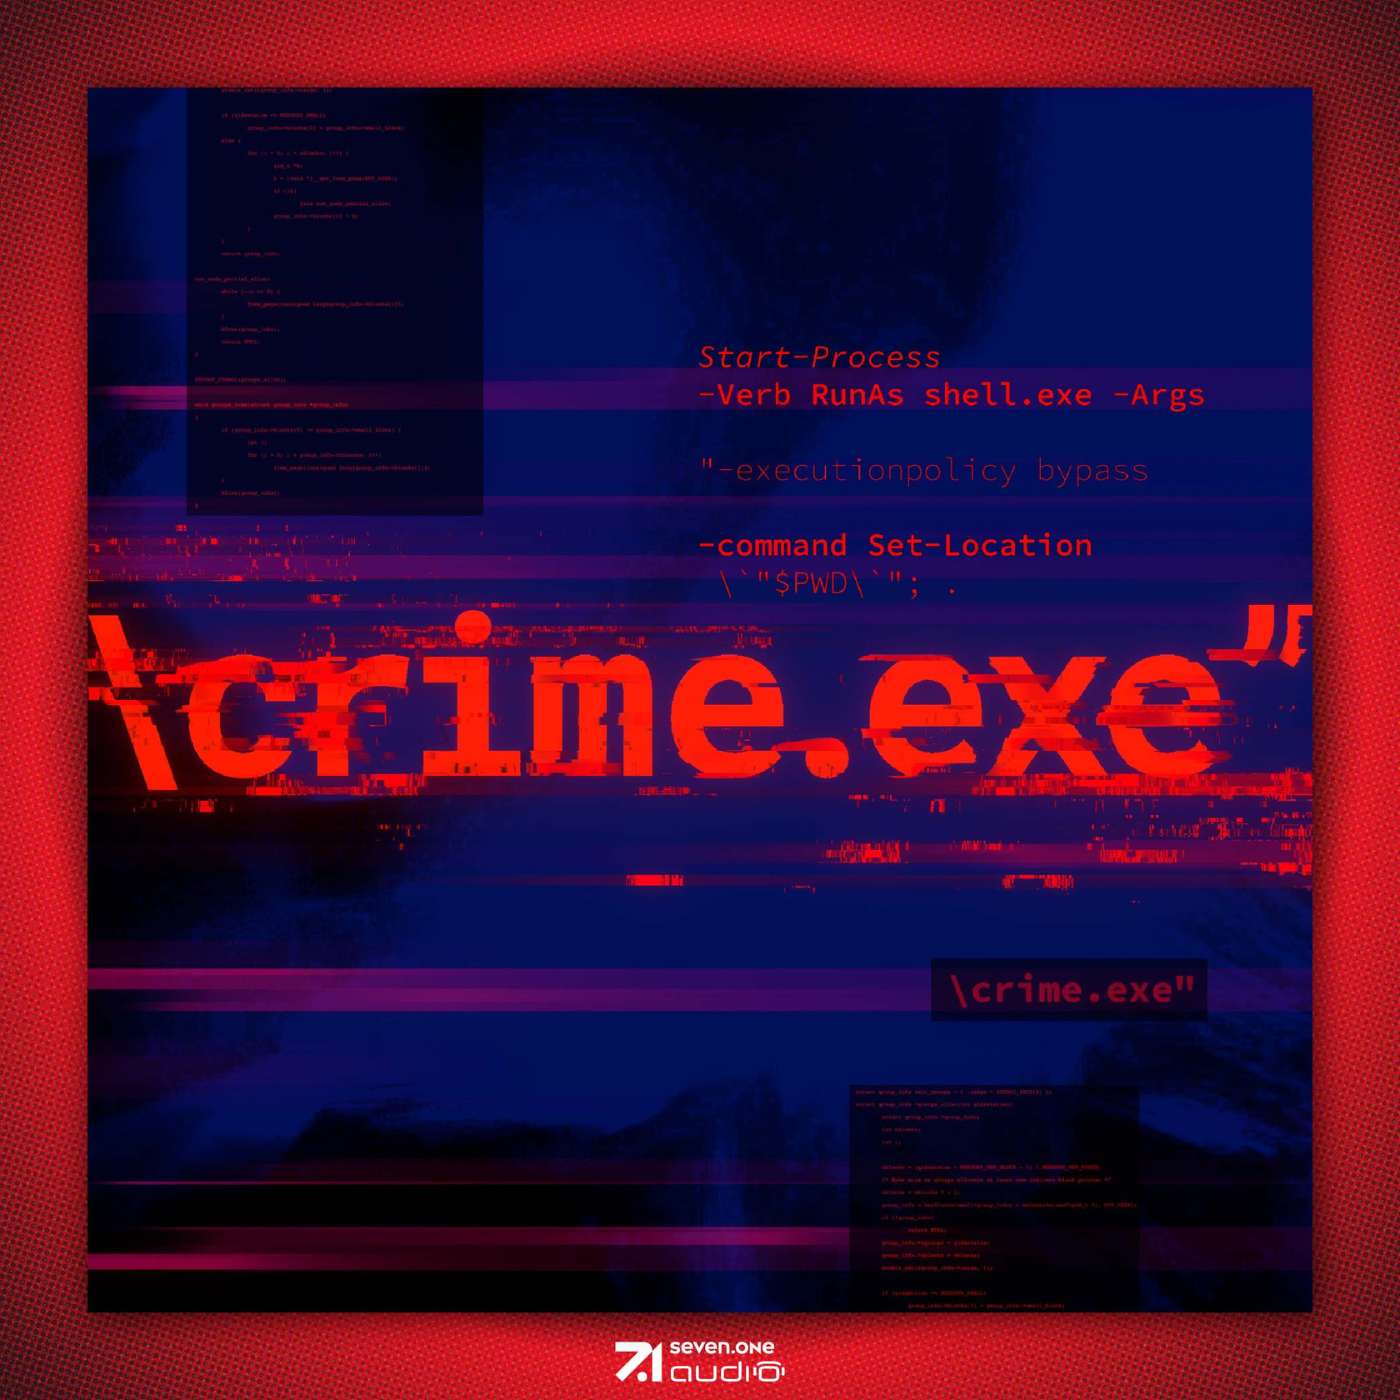 Crime.exe #11 carding